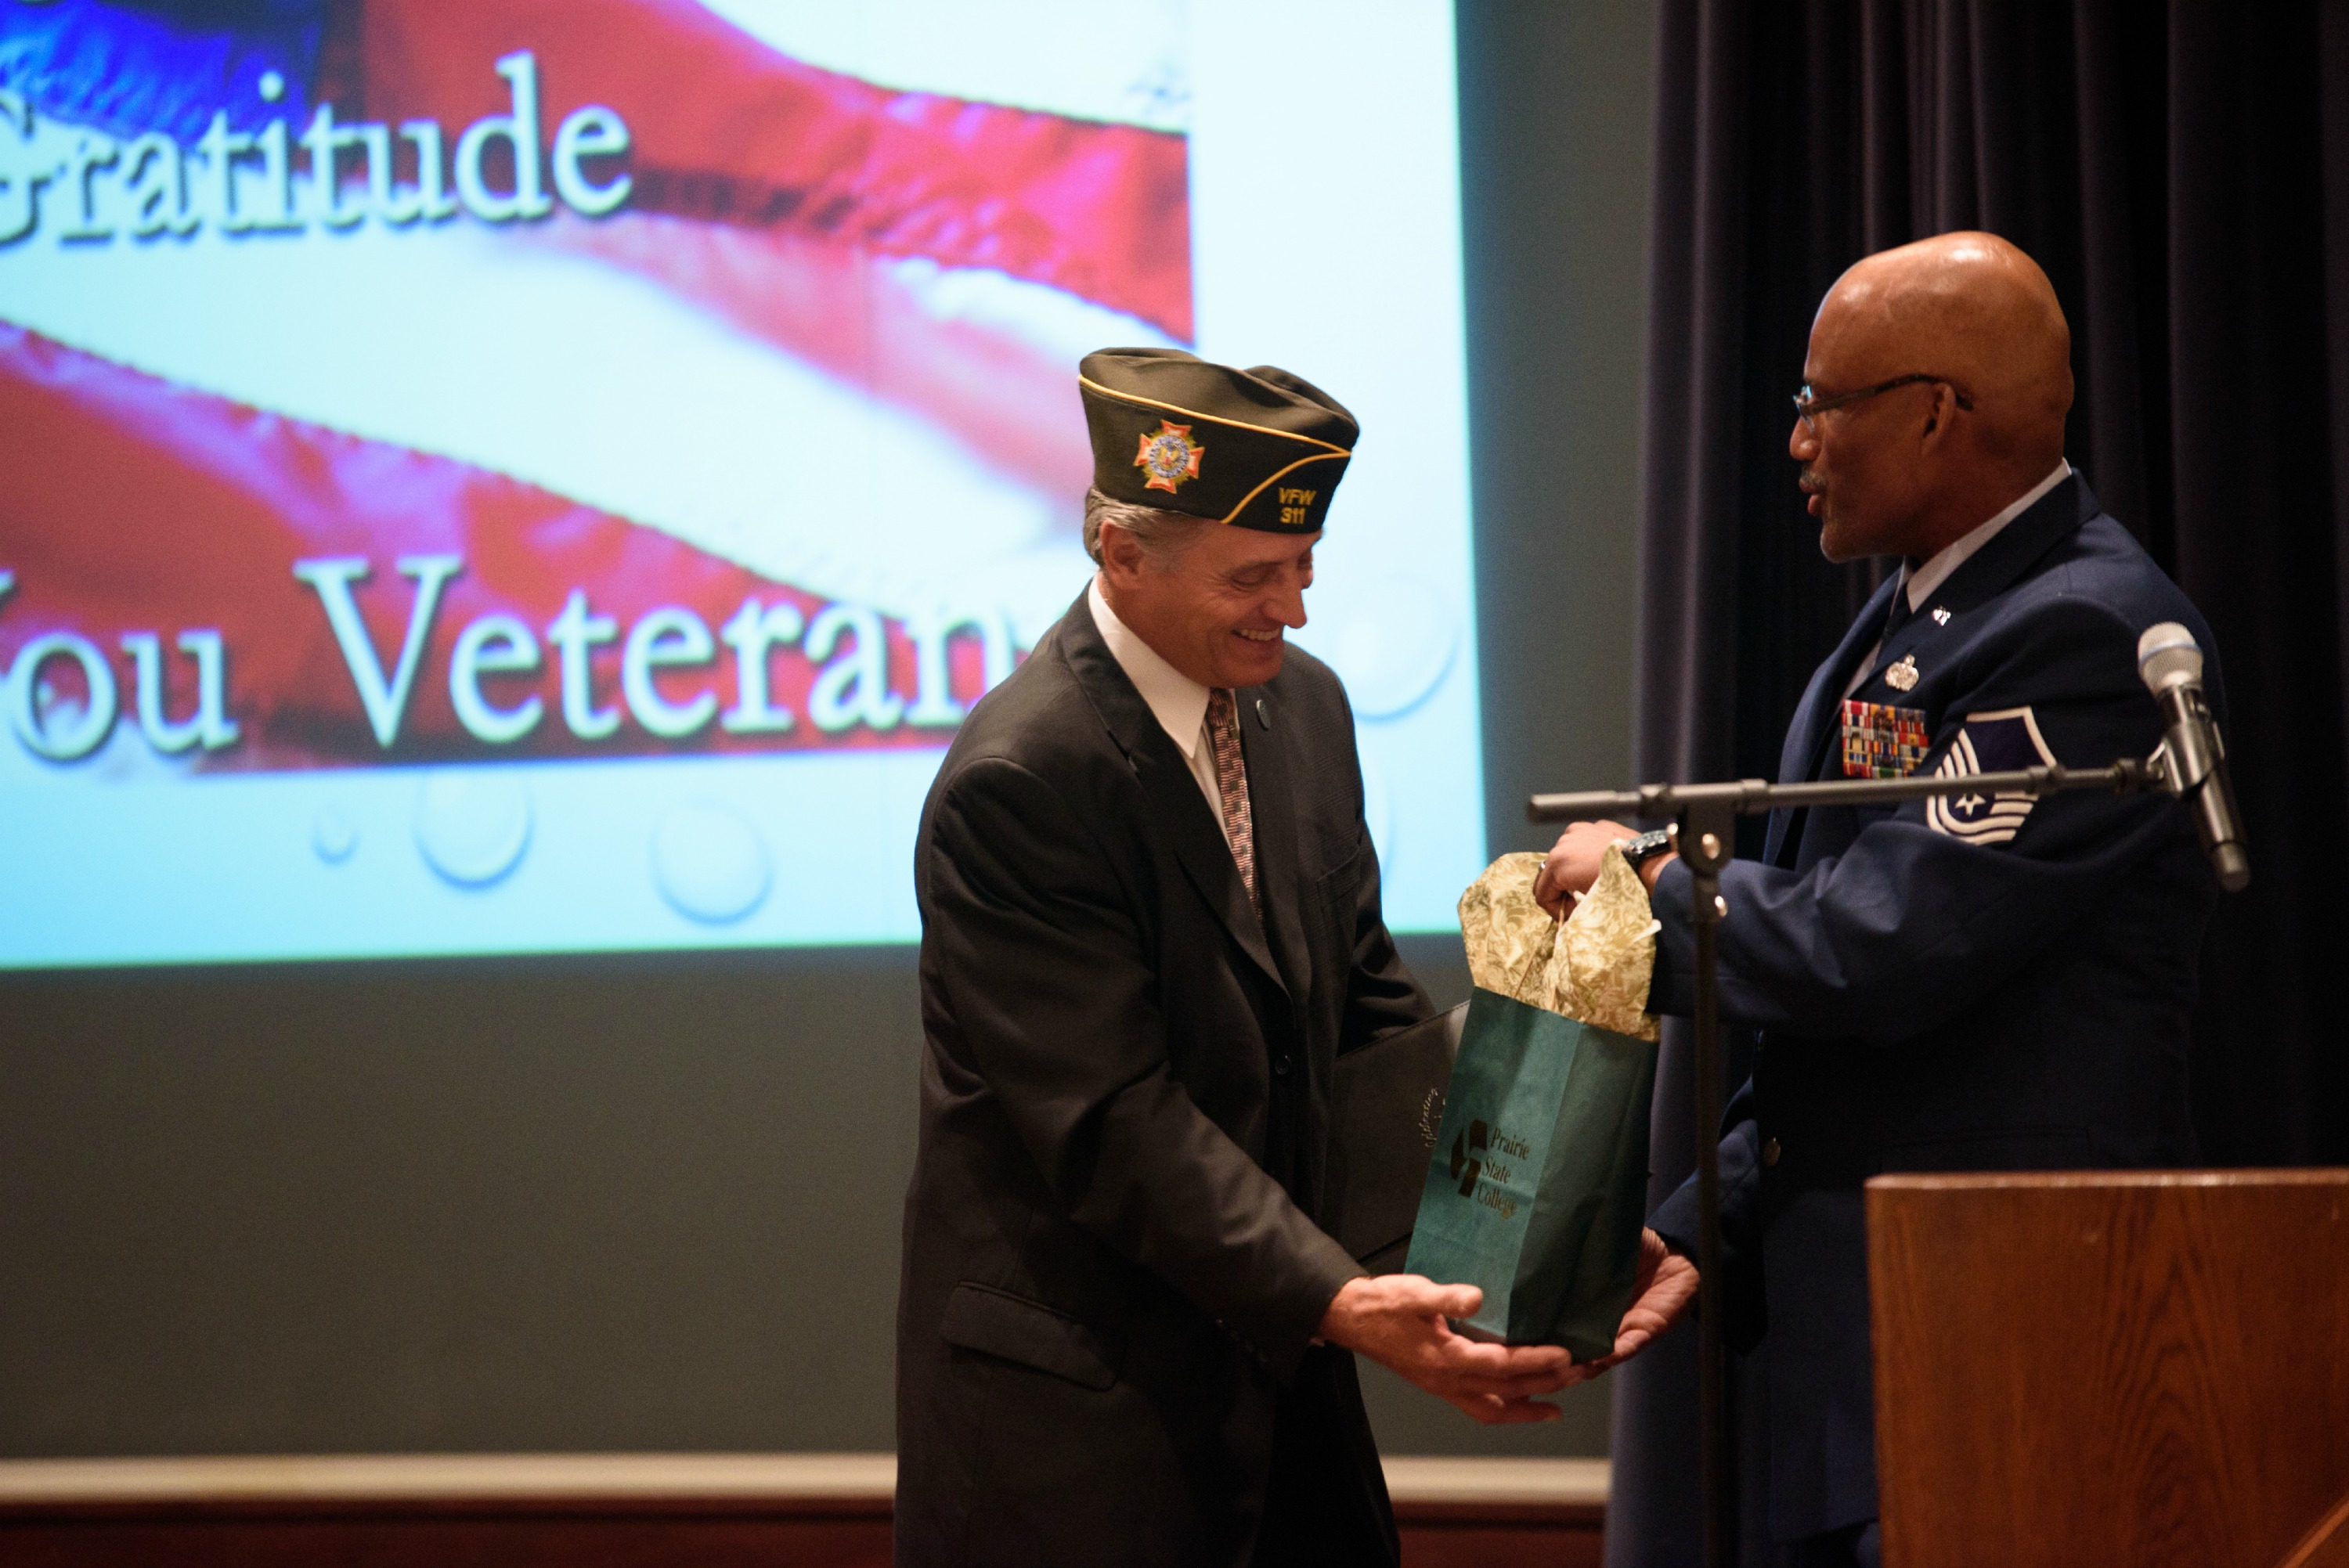 Veterans Day Ceremony keynote speaker